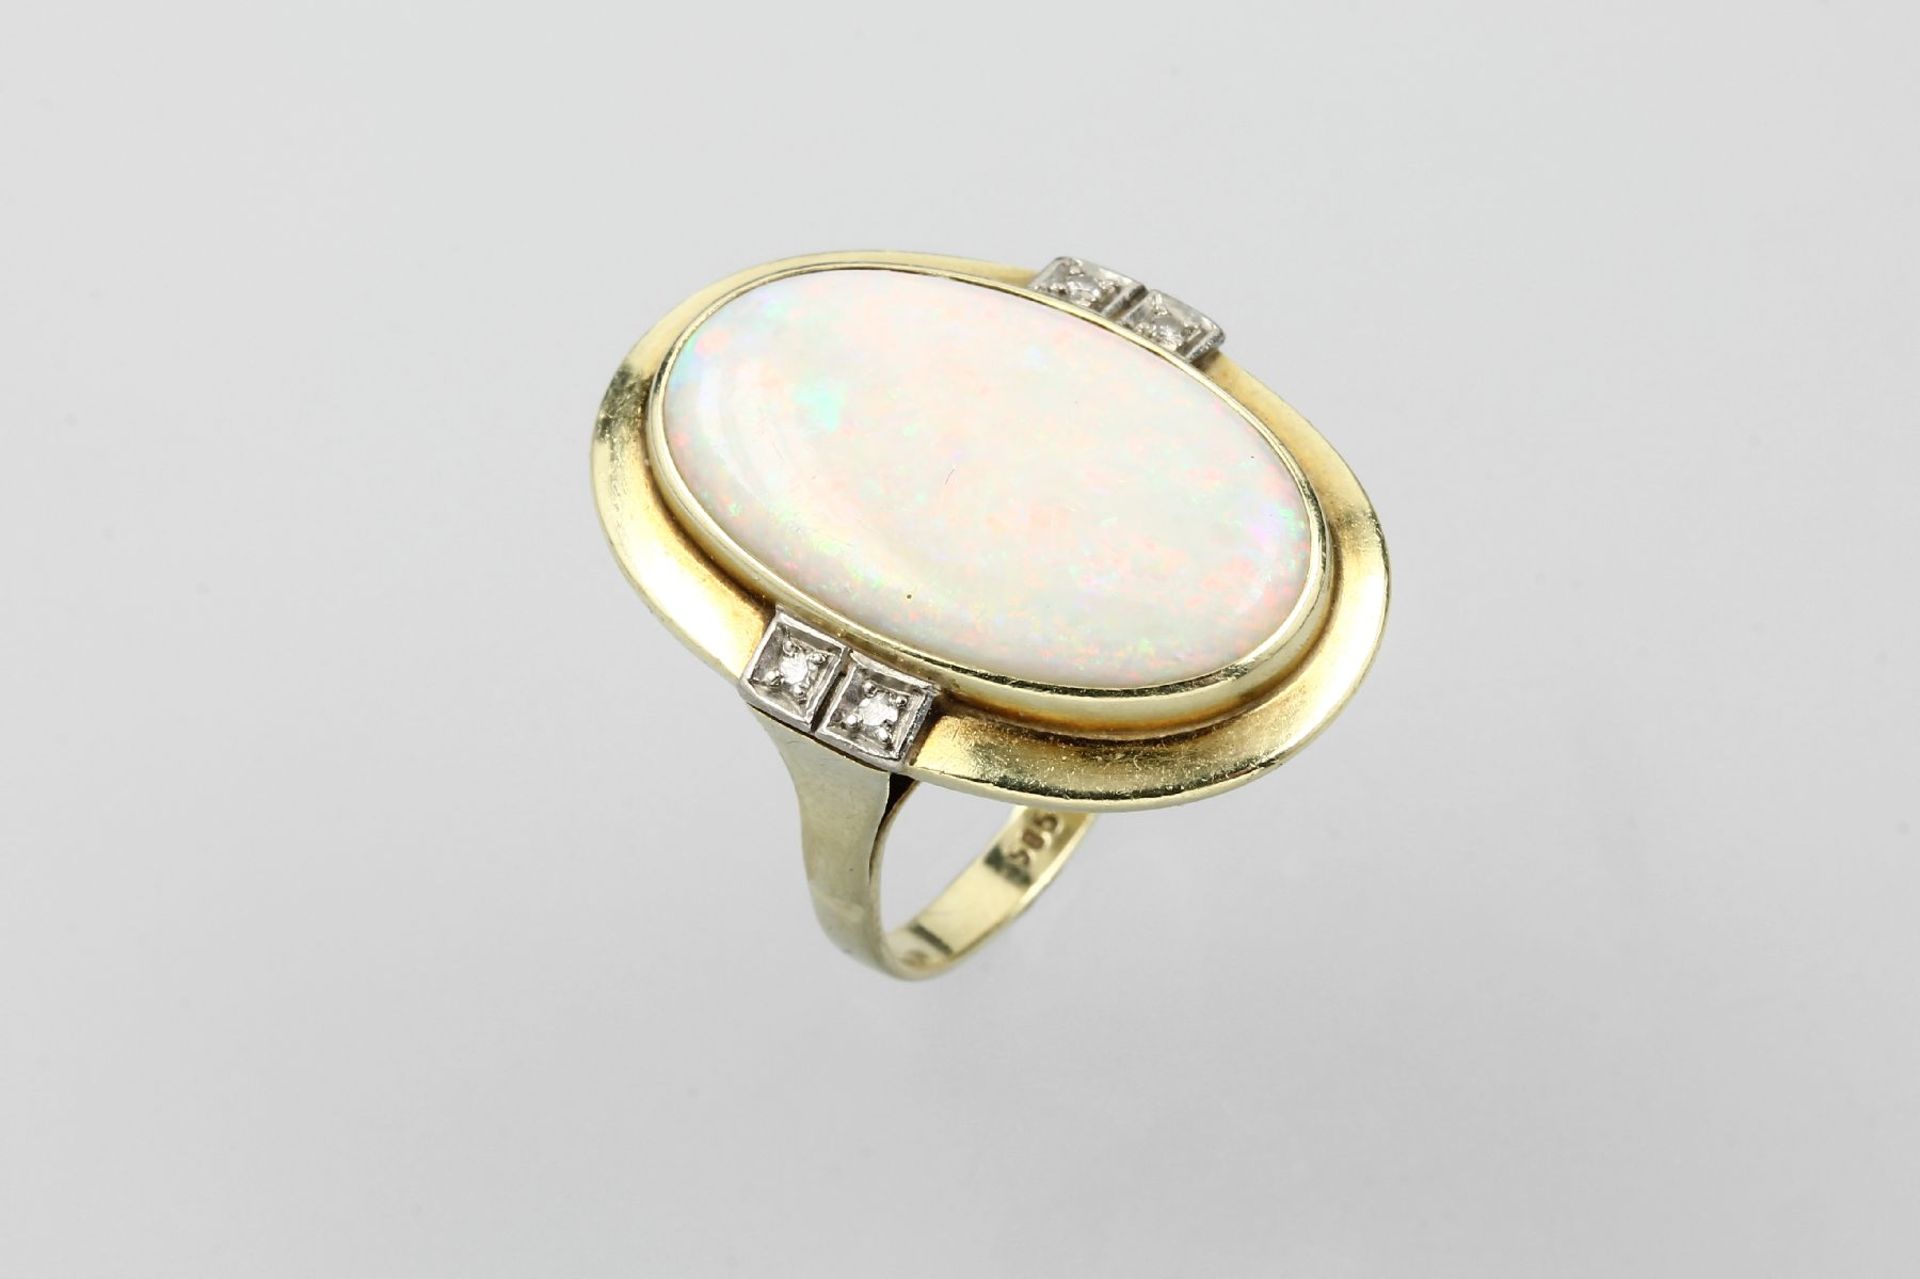 14 kt Gold Ring mit Opal und Diamanten, GG 585/000, mittig ovaler Opalcabochon ca. 9.0 ct, schönes